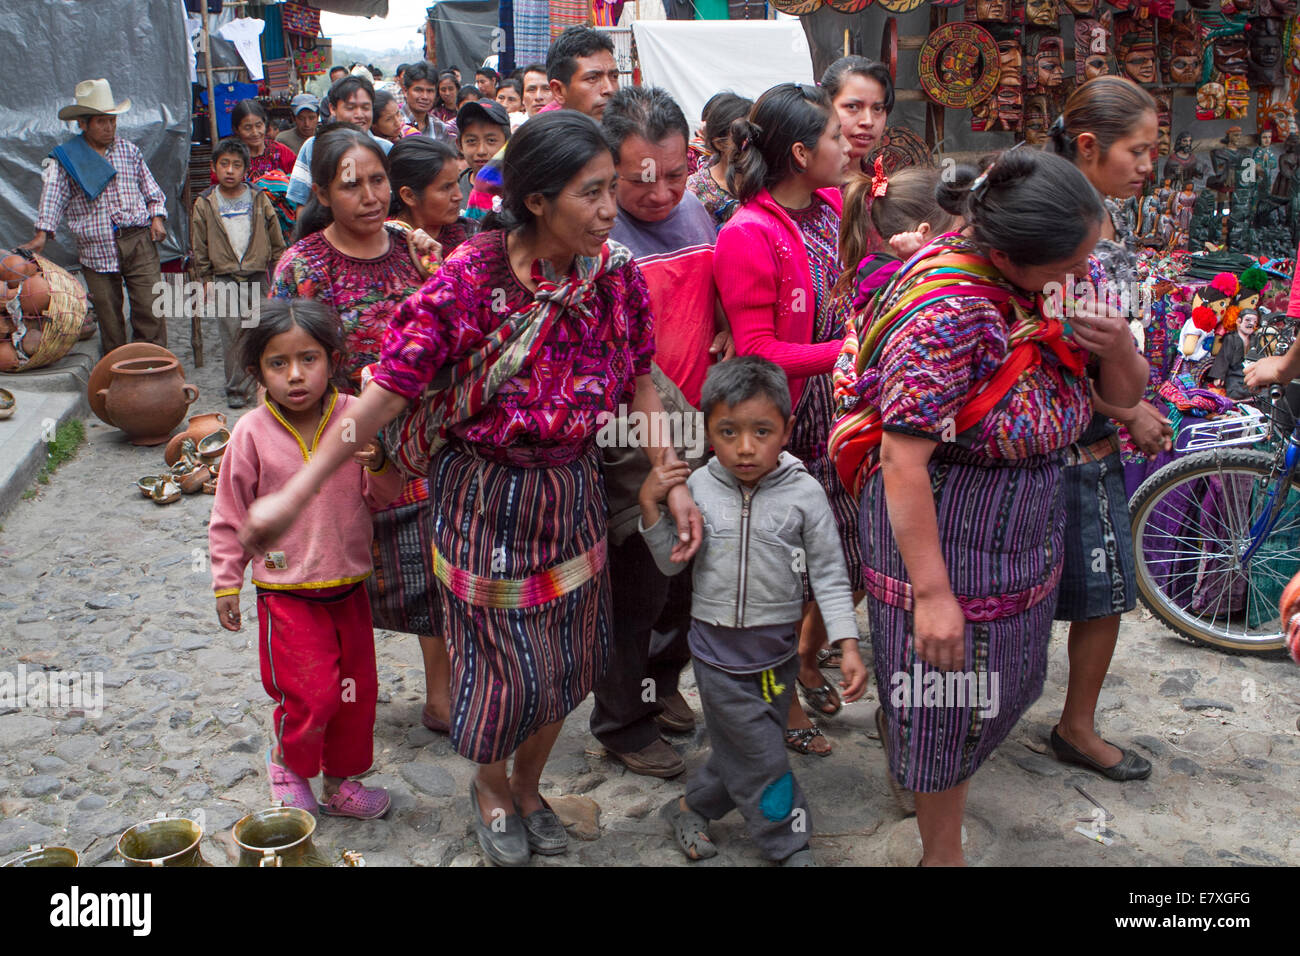 Tradizionale mercato indigeno nella città guatemalteca di Chimaltenango, America Centrale Foto Stock